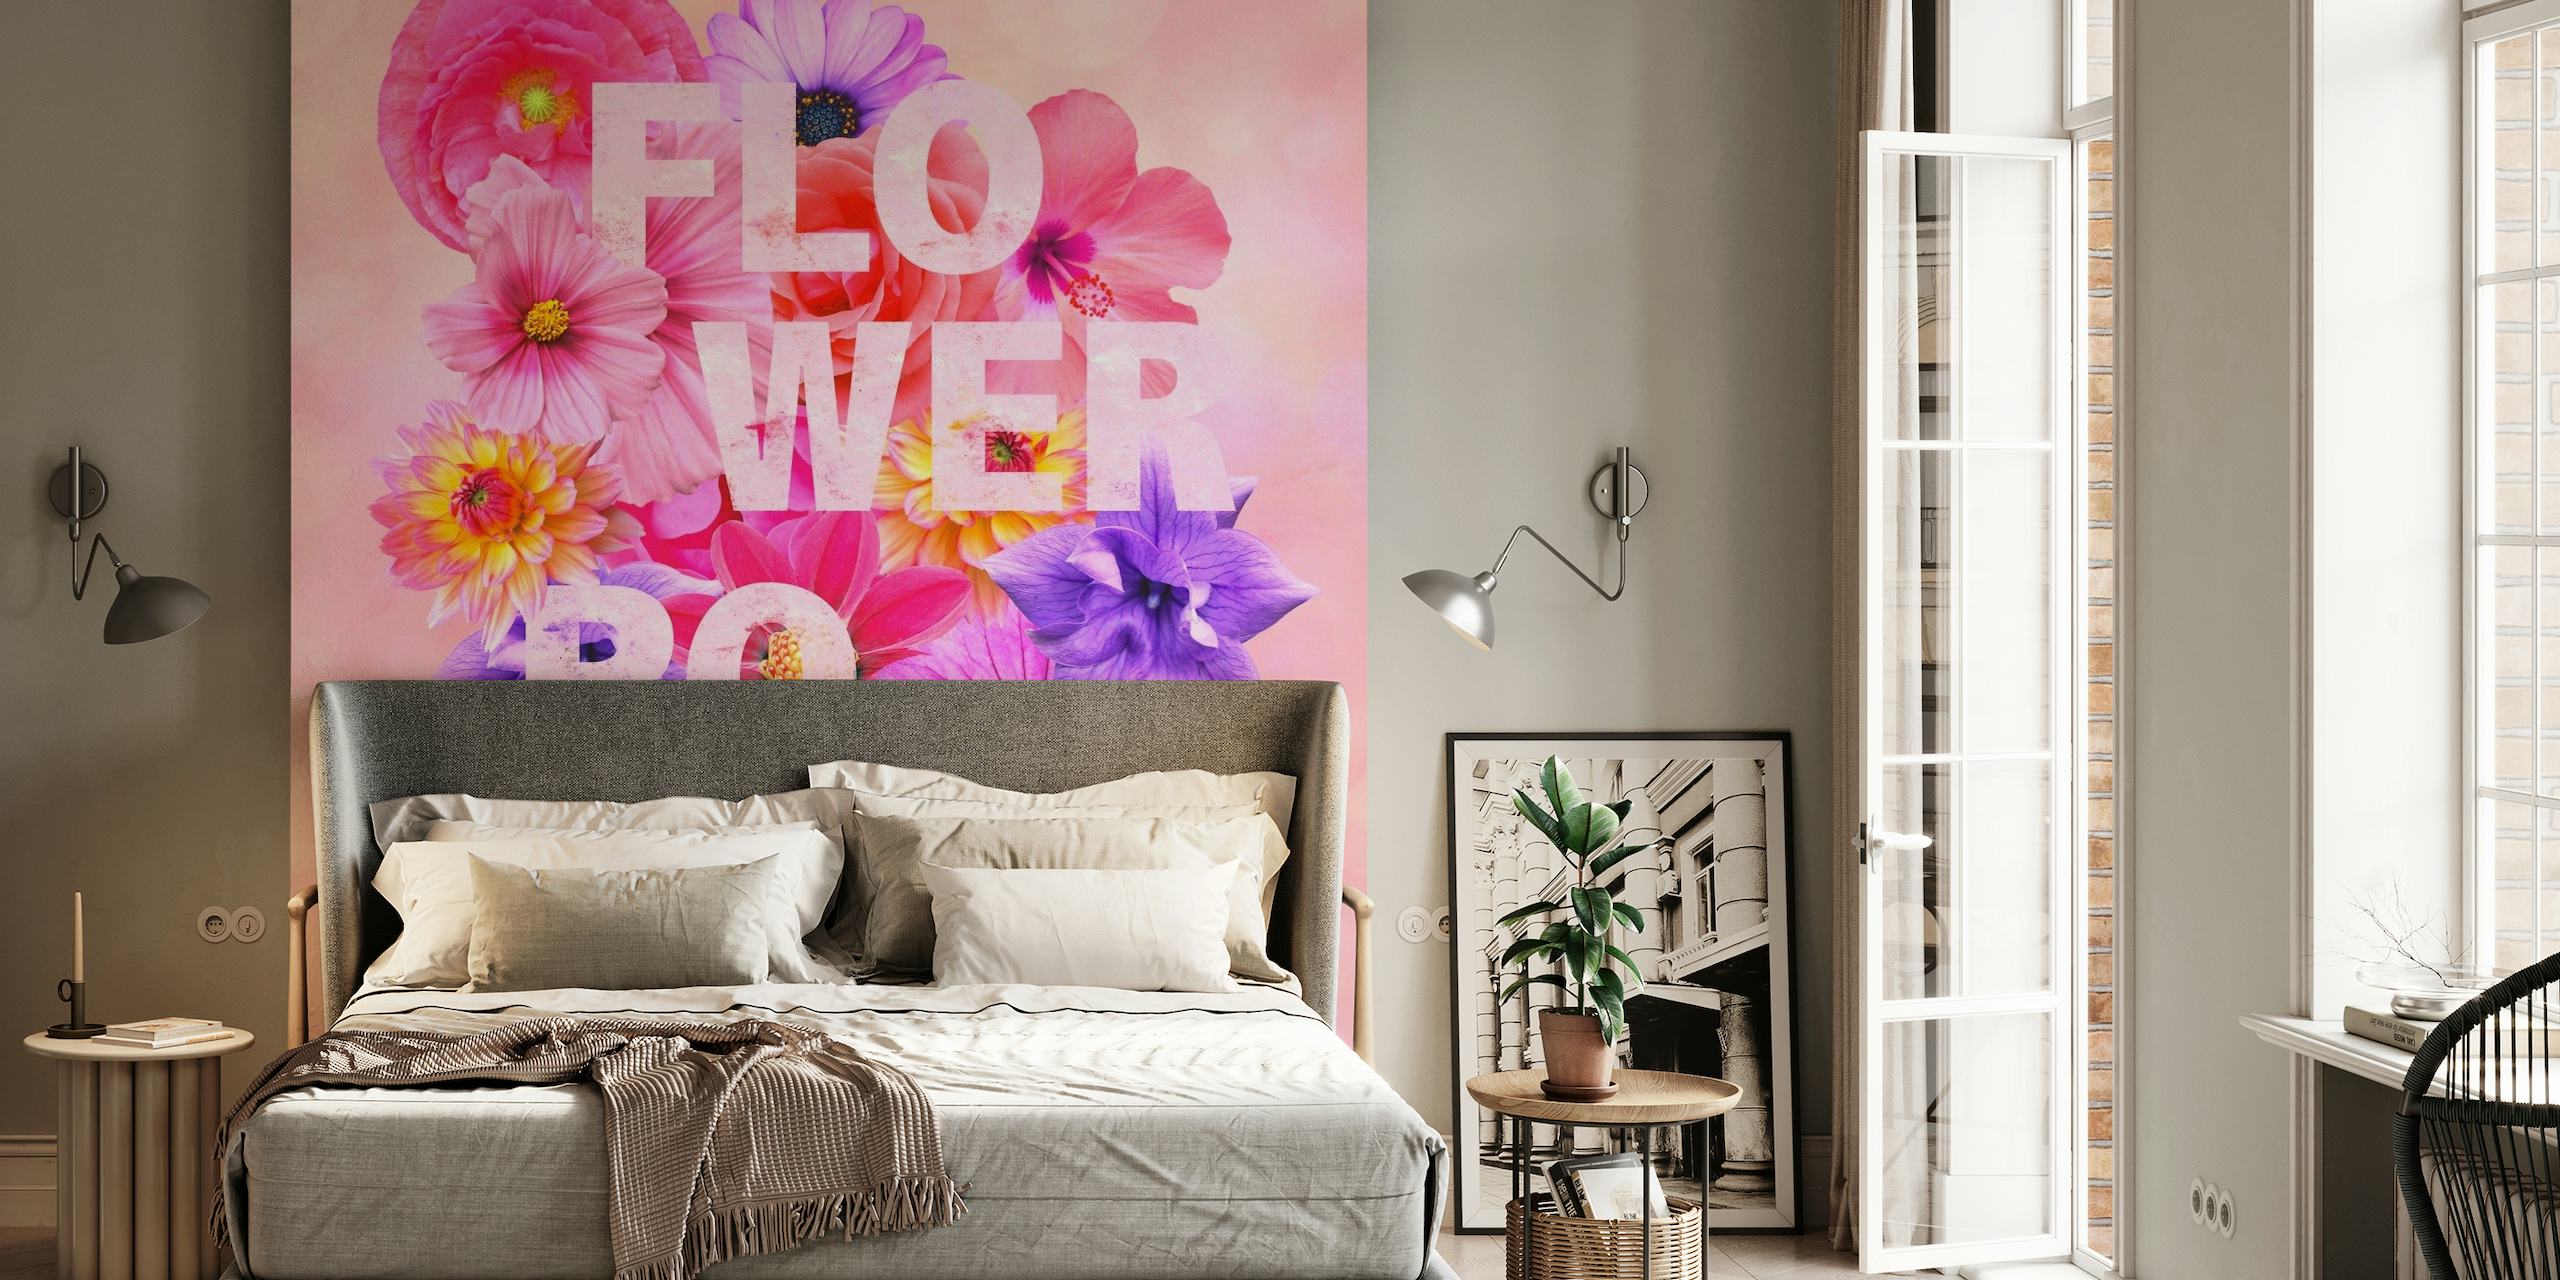 Colorato murale floreale con il testo "FLOWER POWER", che emana una vibrante atmosfera primaverile